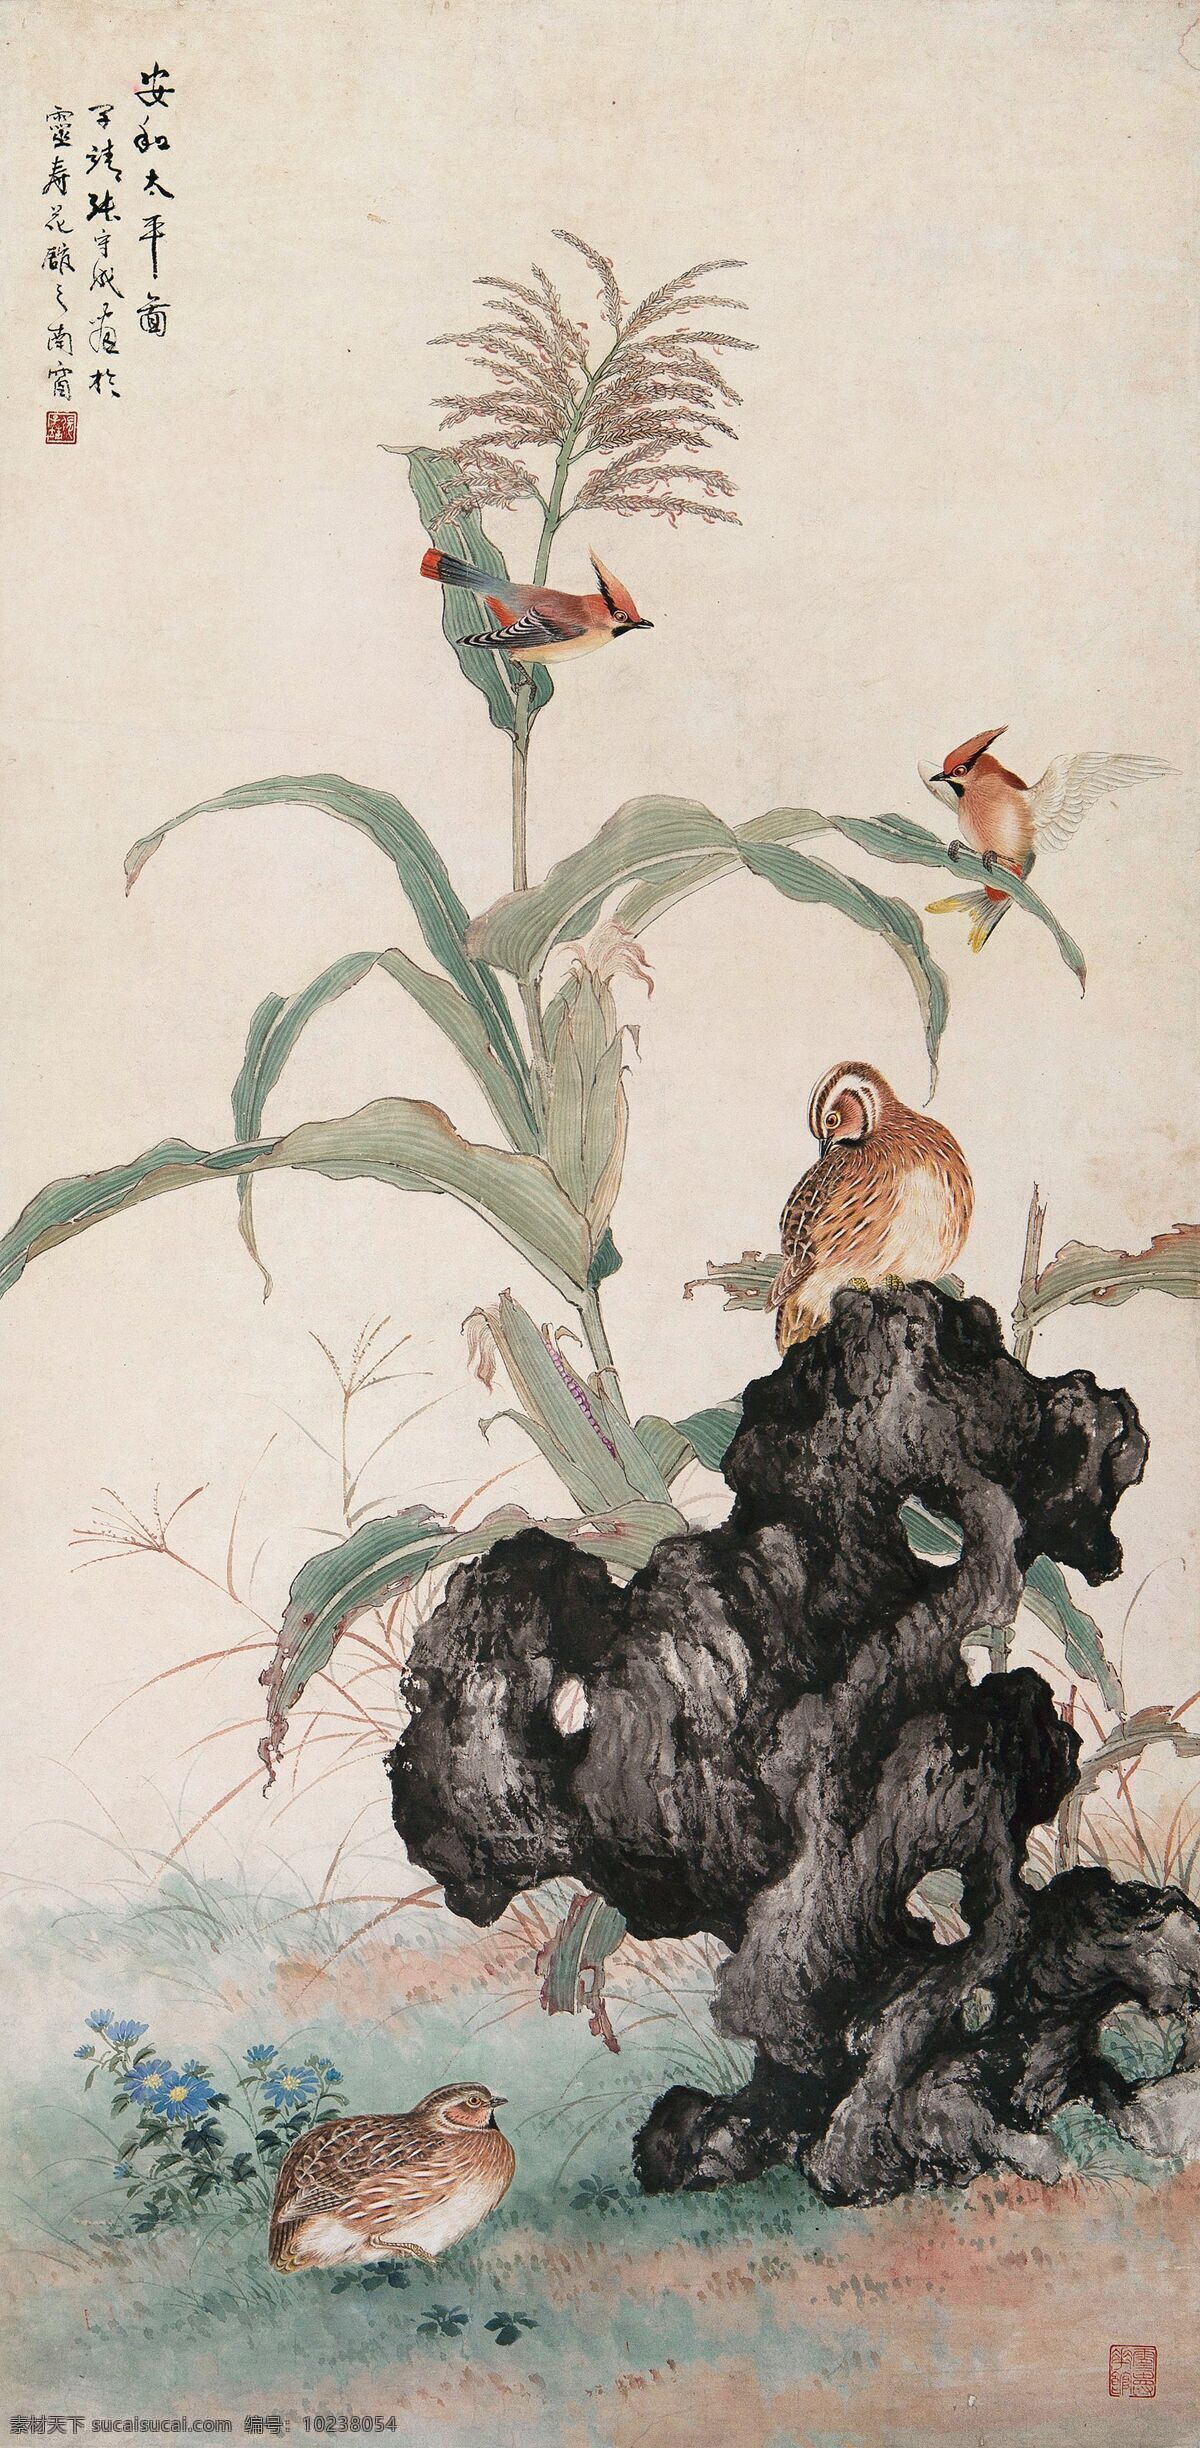 安和太平图 张守成作品 玉米 奇石 翠鸟 松鸡 中国古代画 中国古画 文化艺术 绘画书法